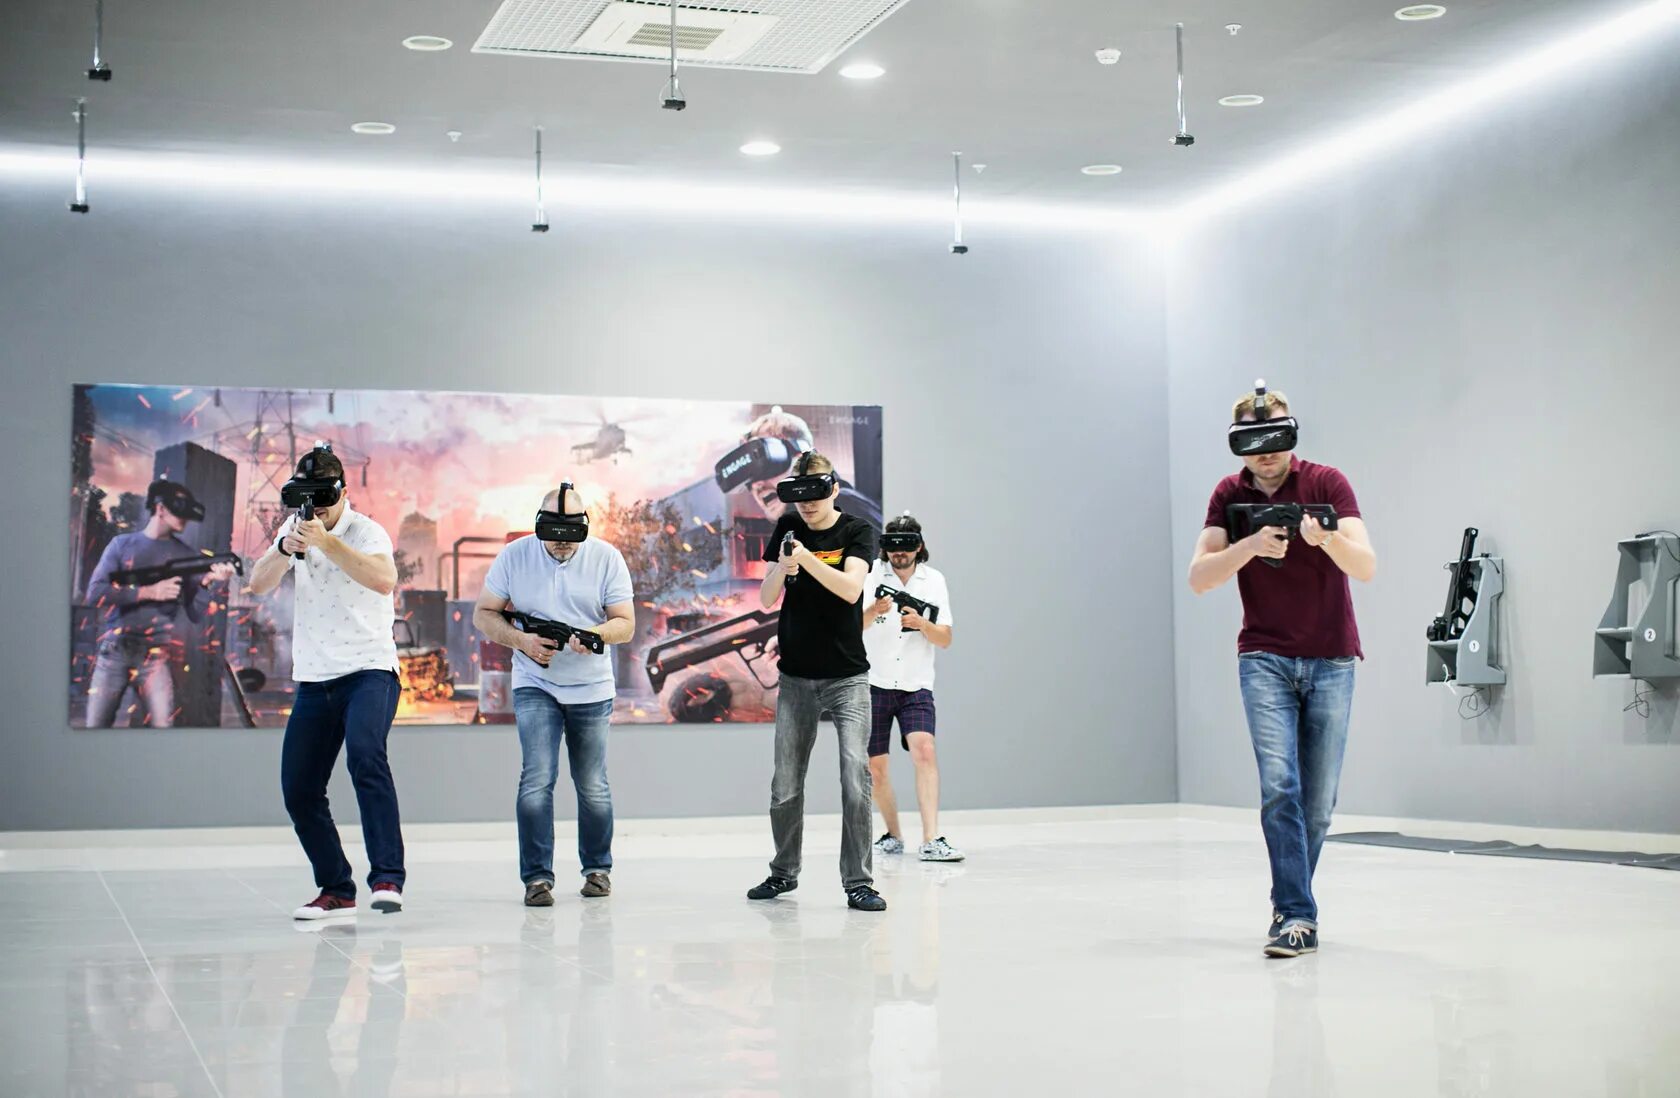 Жанры vr. Парк виртуальной реальности (VR парк). Парк развлечений engage VR. Виртуальная реальность в развлечениях. Виртуальная реальность в парке.